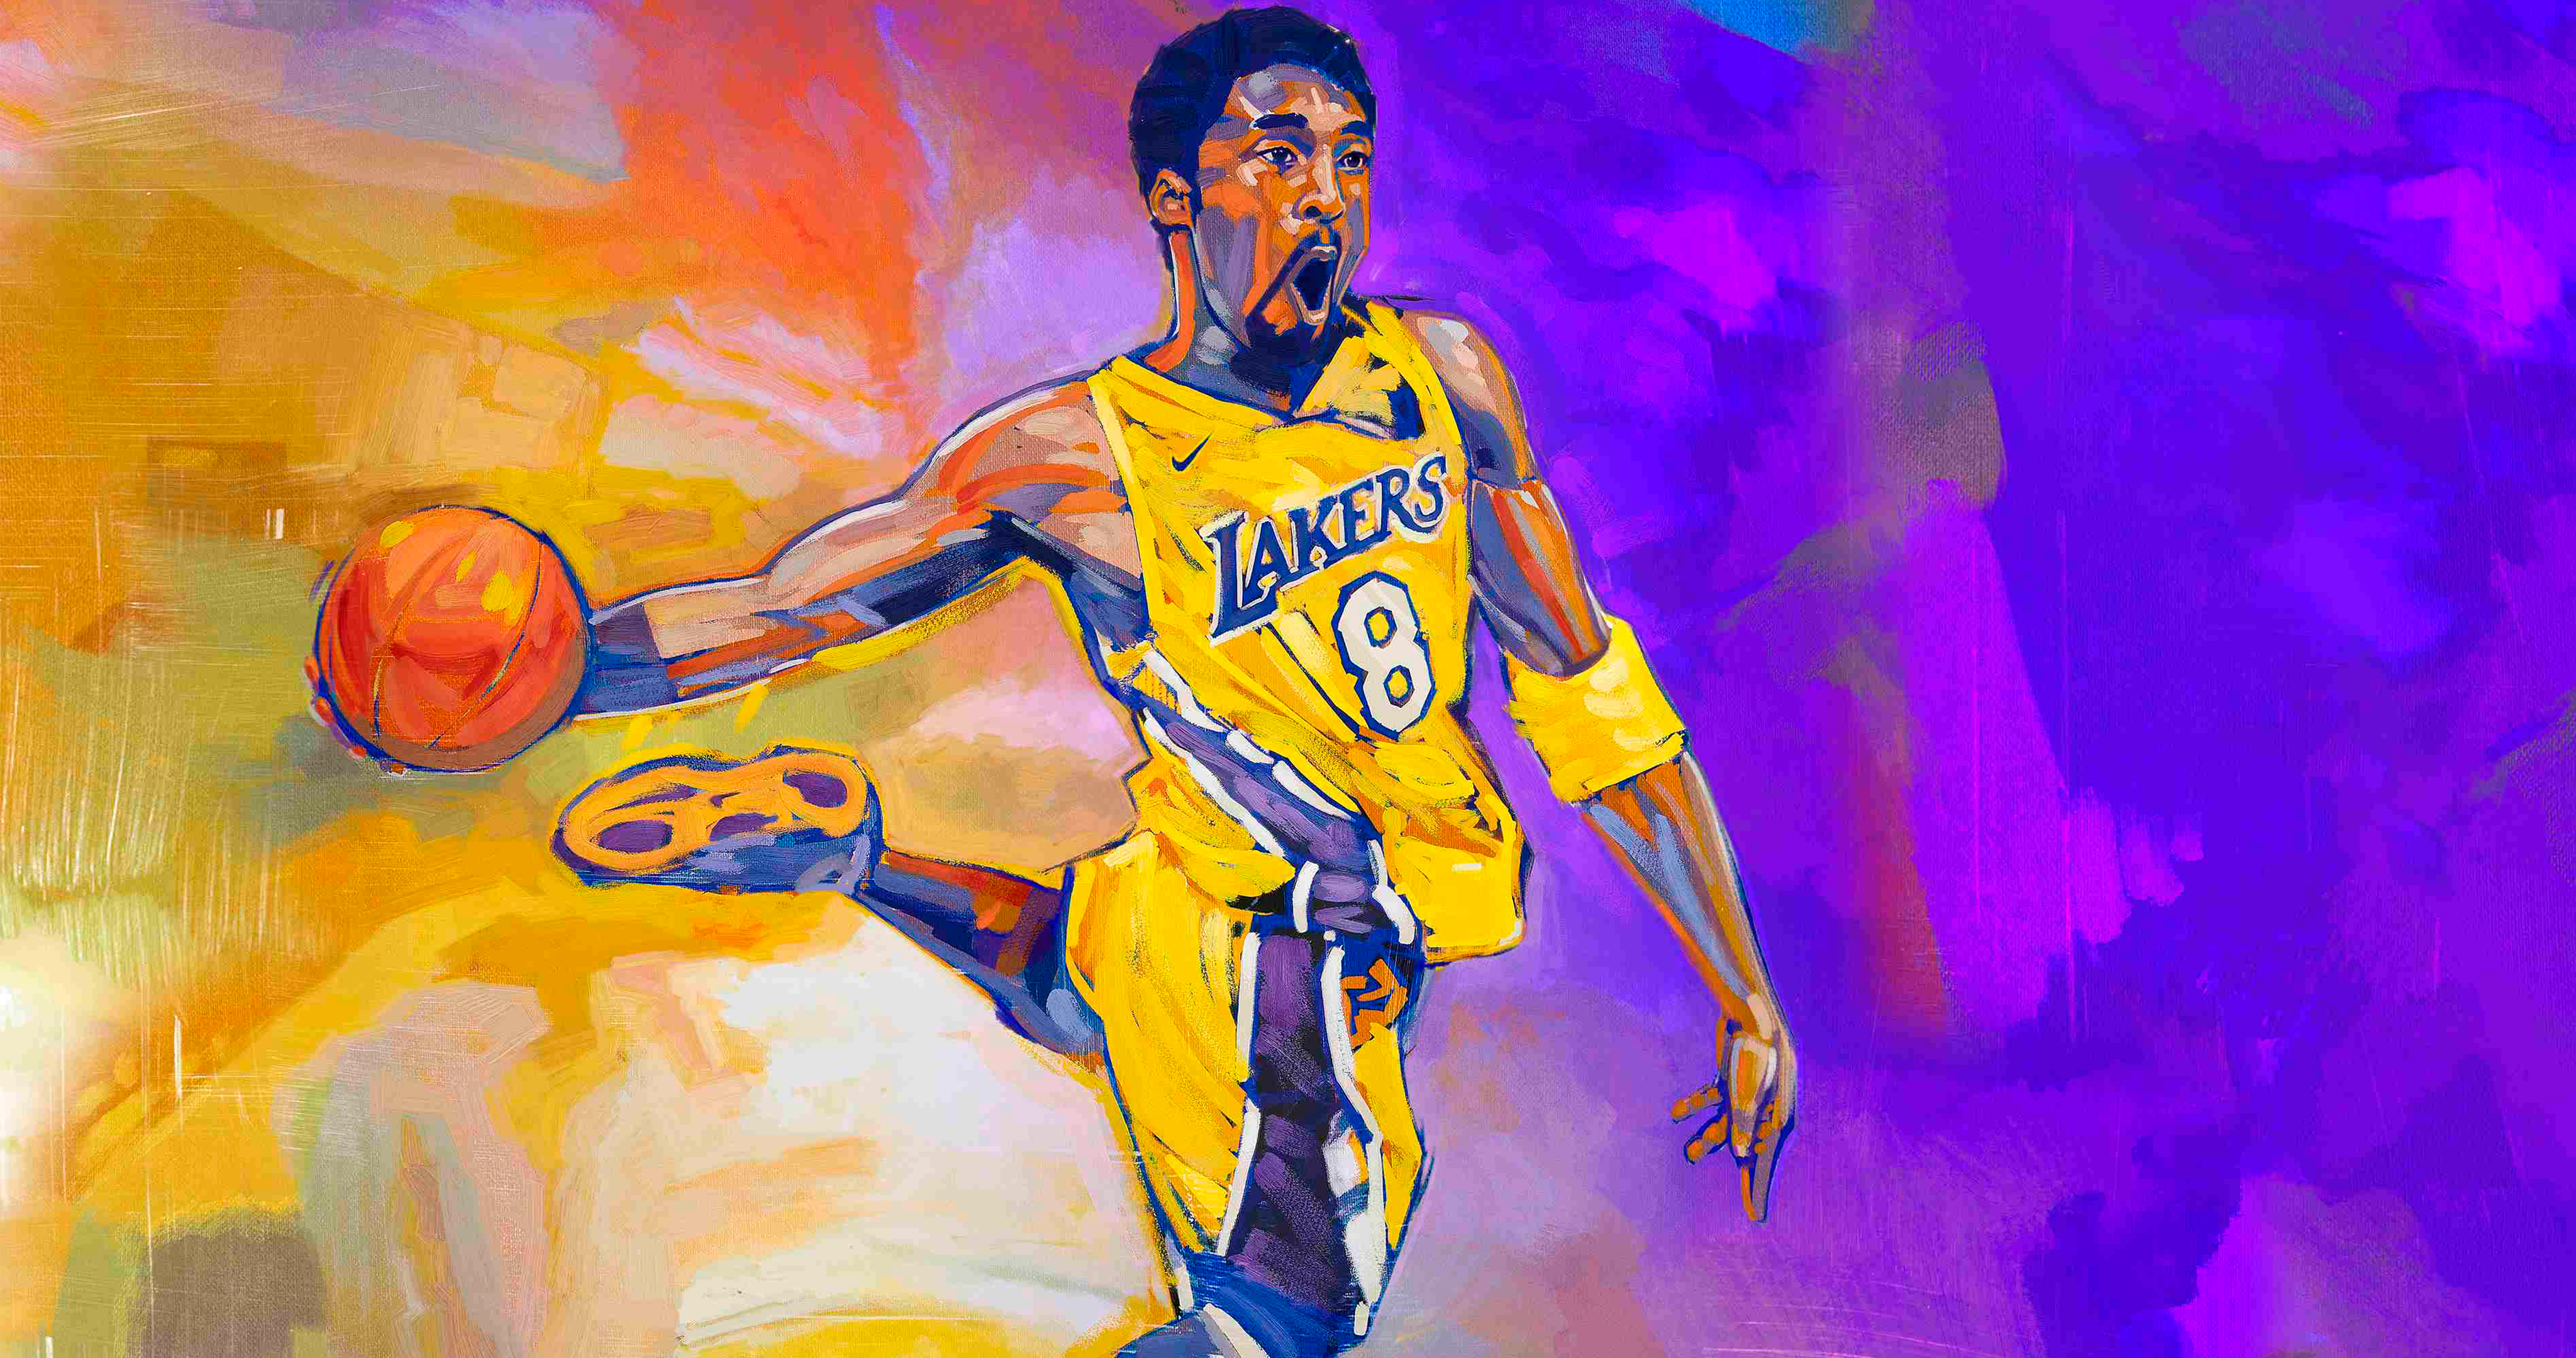 NBA 2K21 Kobe 8 Bryant Wallpaper in 4K: NBA2k